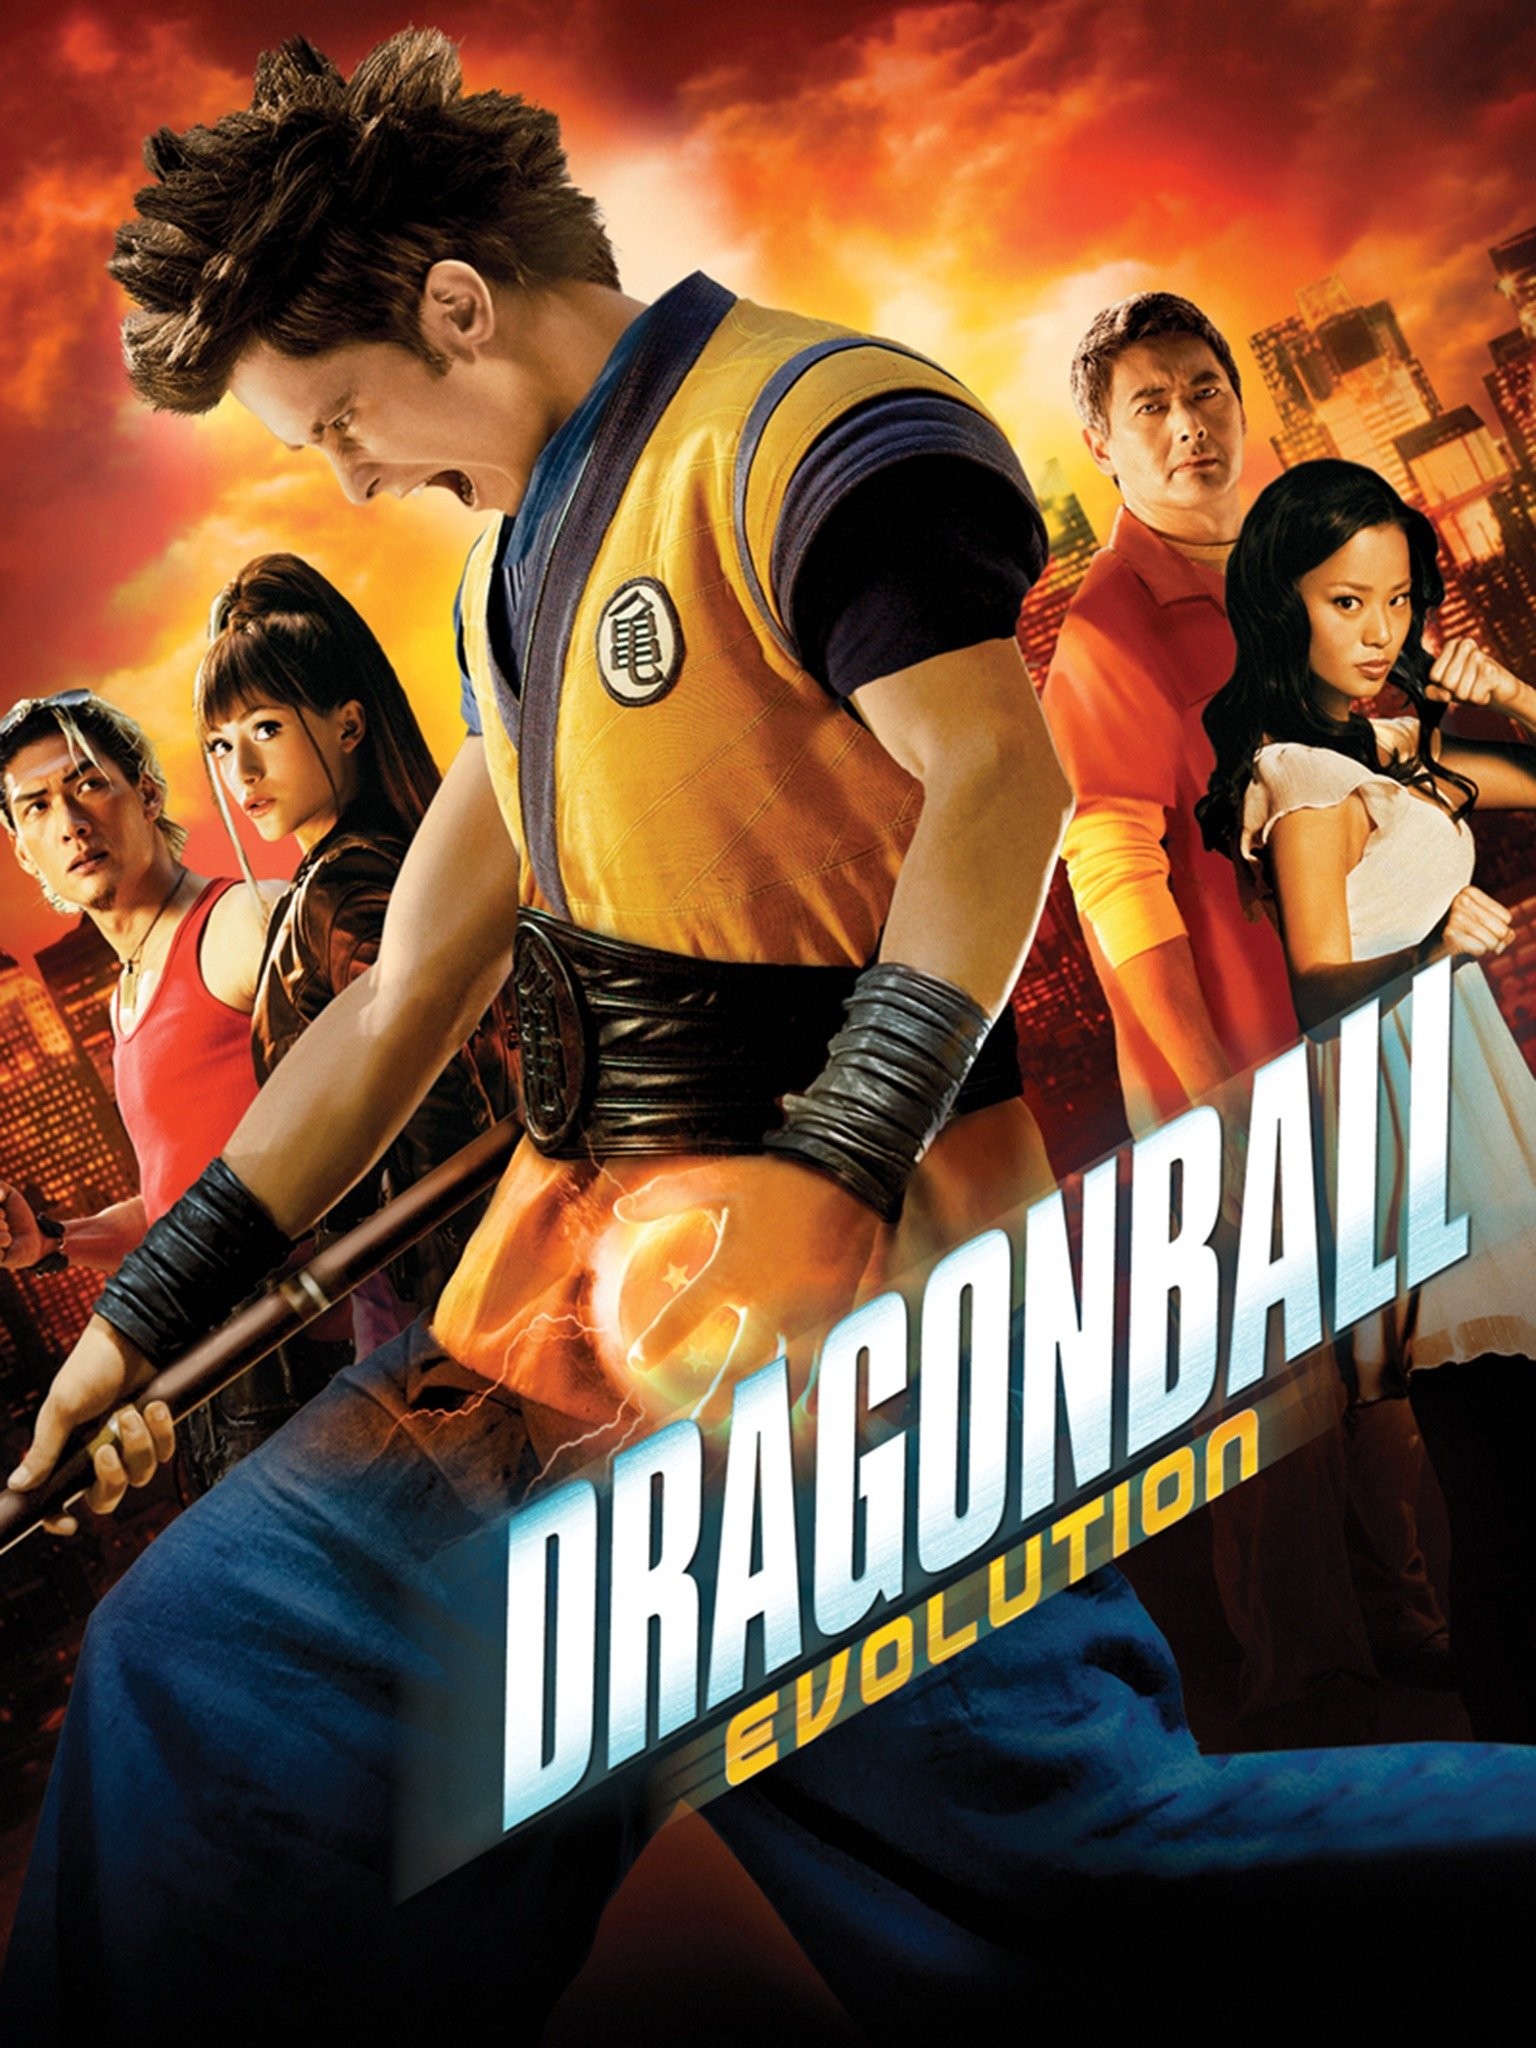 Dragonball Evolution é um dos maiores fracassos do cinema, diz editor -  Observatório do Cinema